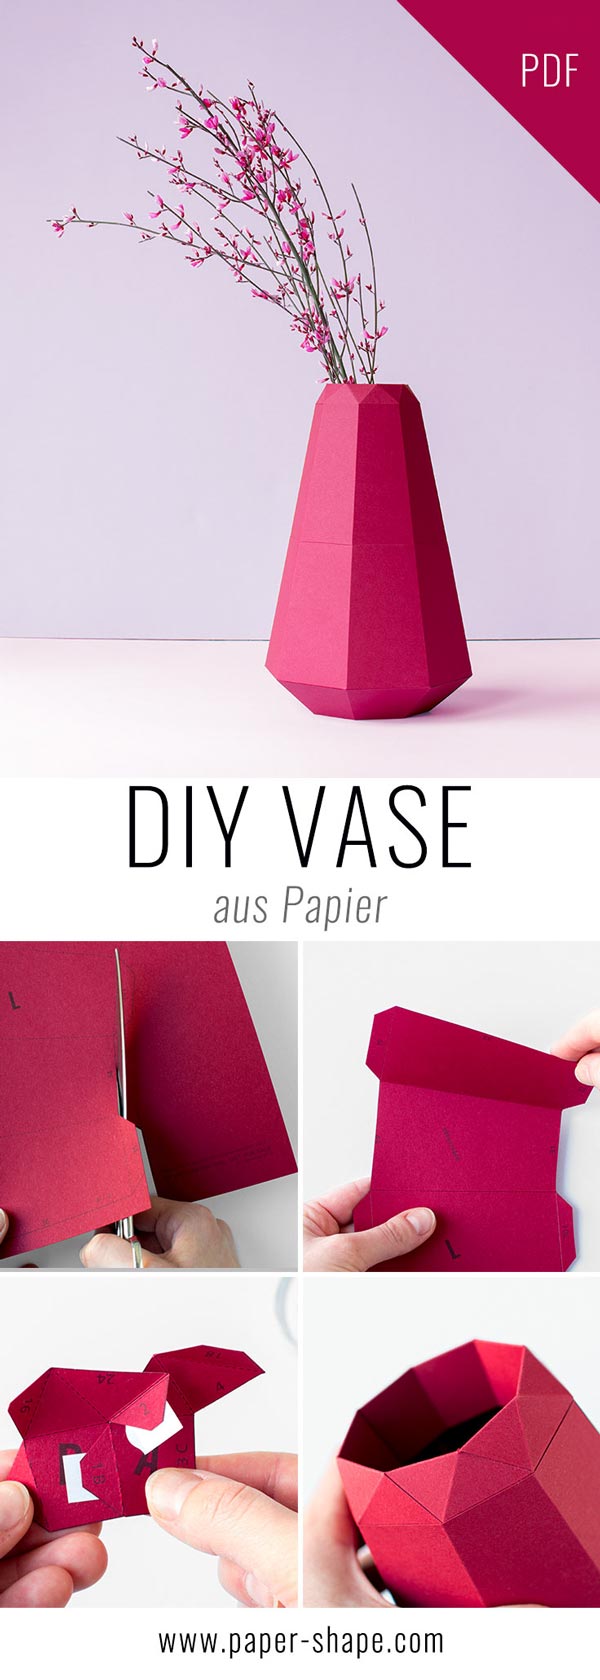 DIY Papier Vase im coolen Origami-Design mit Vorlage. Ihr müsste einfach die Papiere schneiden, falten, kleben. Finde die Farben mega - lavendel, rose, weinrot. PaperShape #vases #papercraft #diy